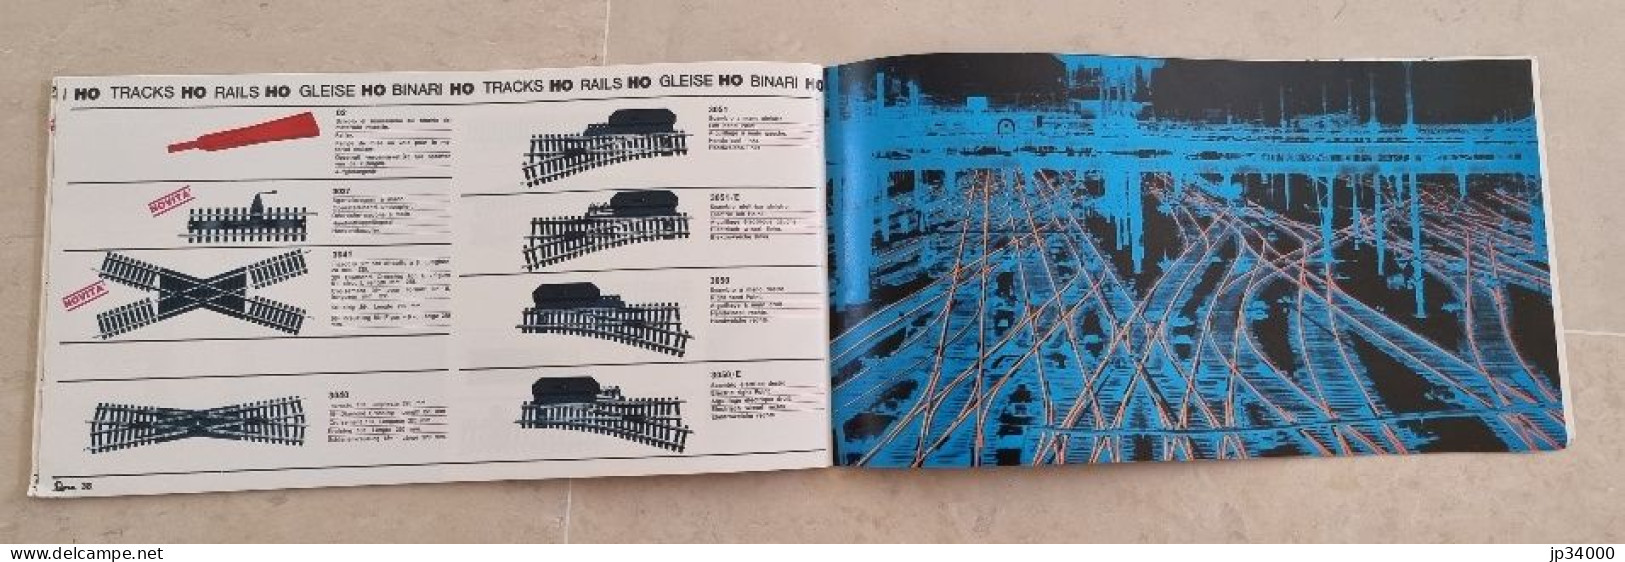 Catalogue Illustré TRAINS ELECTRIQUES (LIMA HO) 1968-69 (texte Multi Langues) - Loks